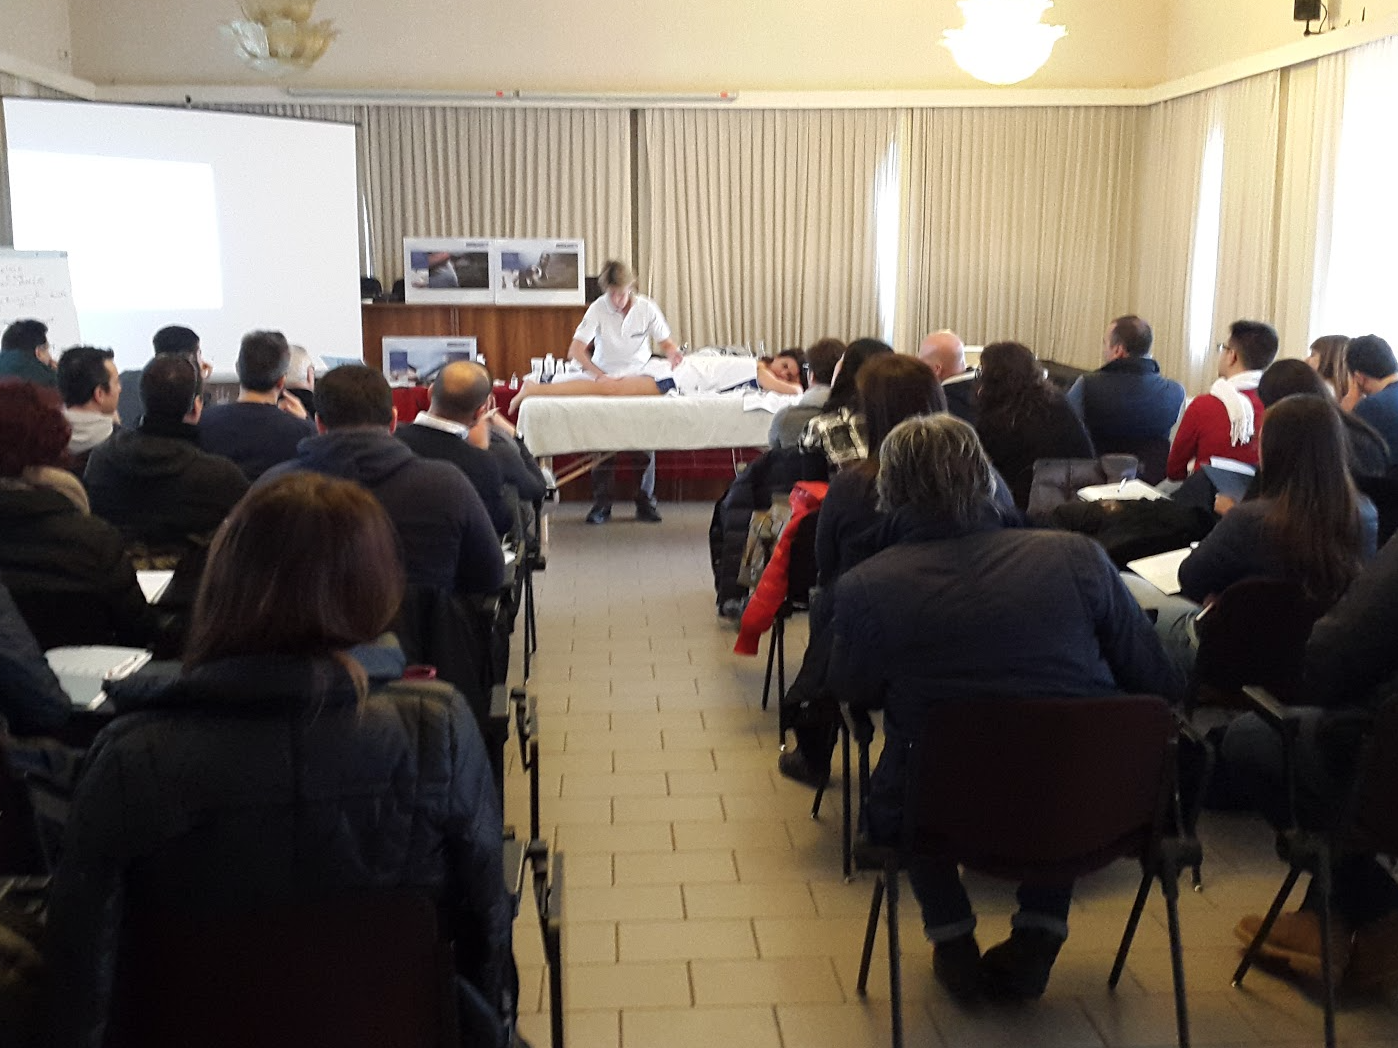 Corso HT Academy. Catania 21.02.15. Specialista nel trattamento della lombalgia.